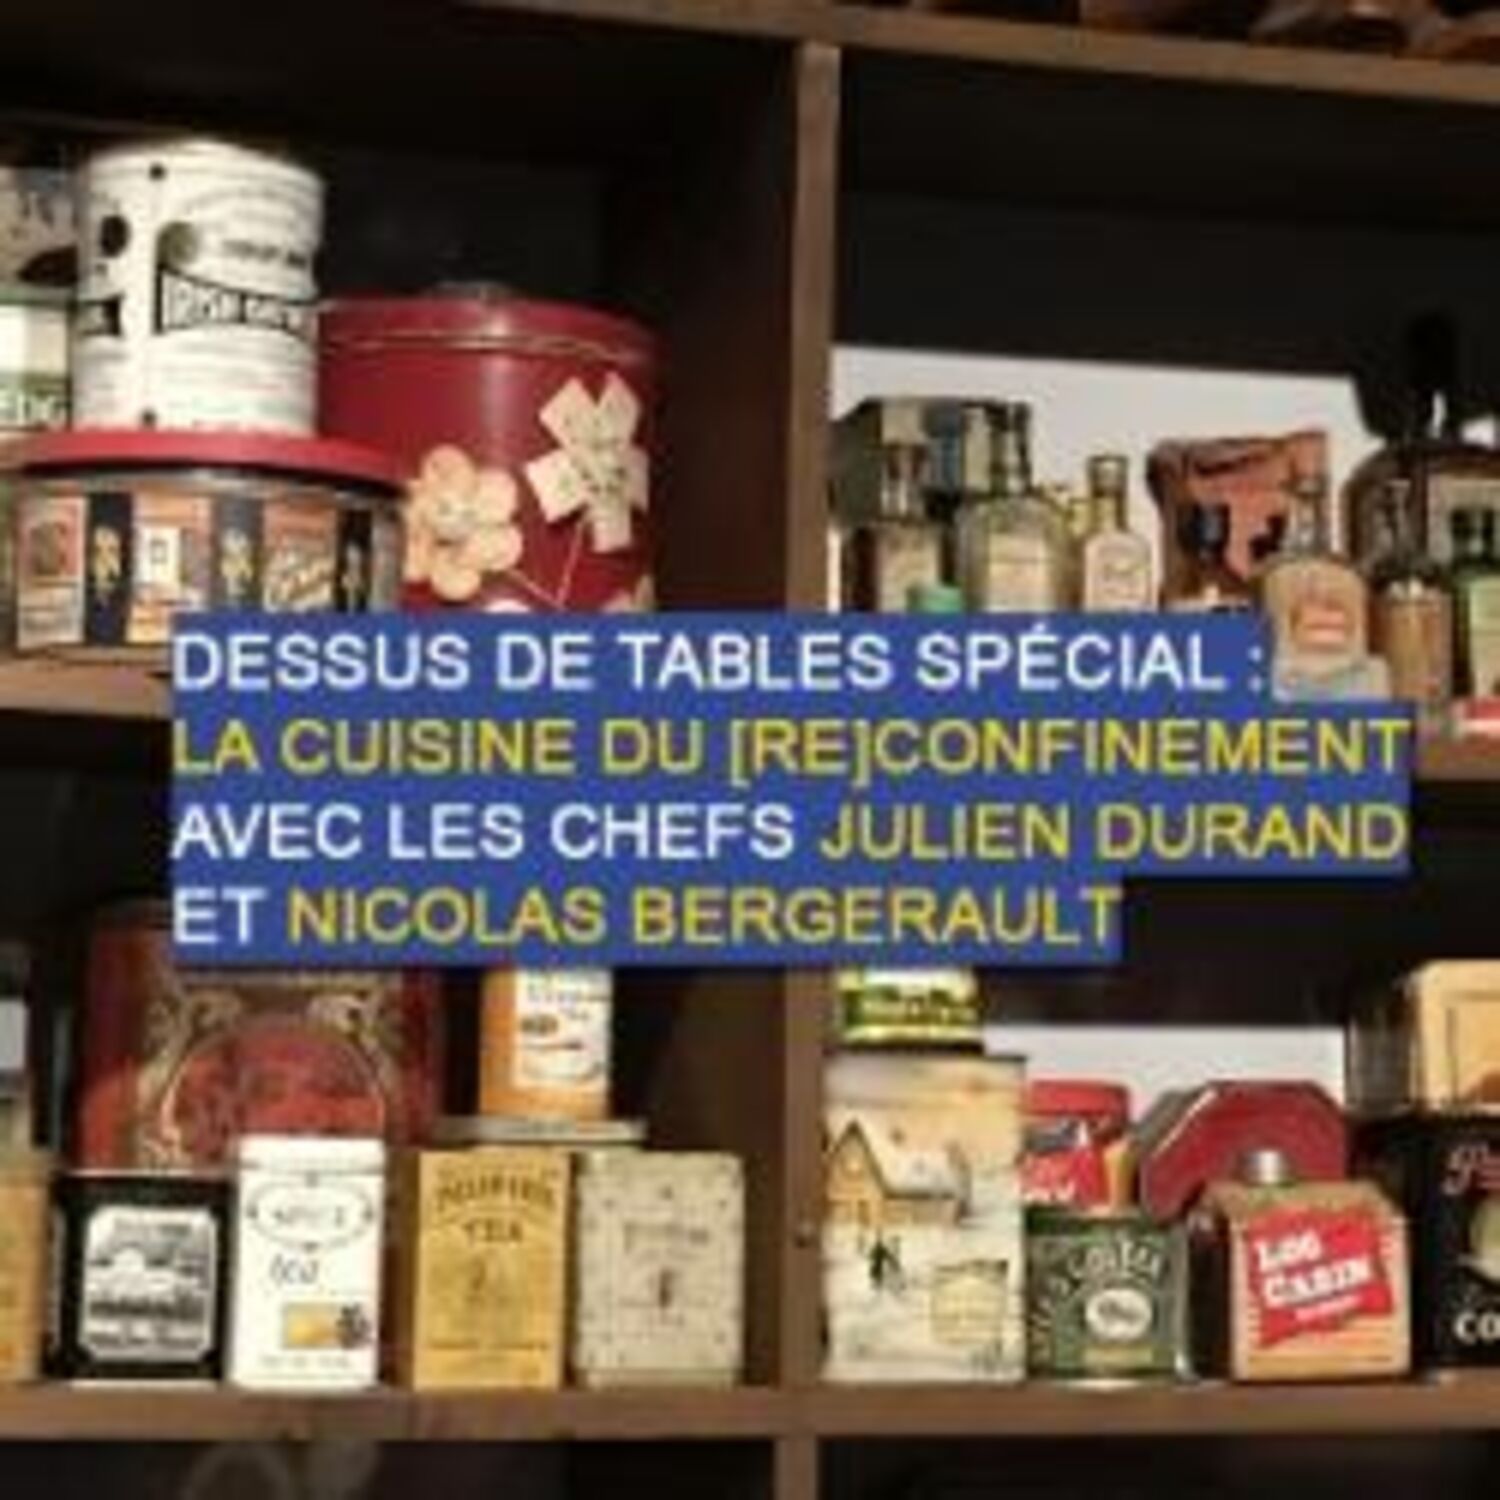 Dessus de tables du 20-03-2021 : La cuisine du (re)confinement